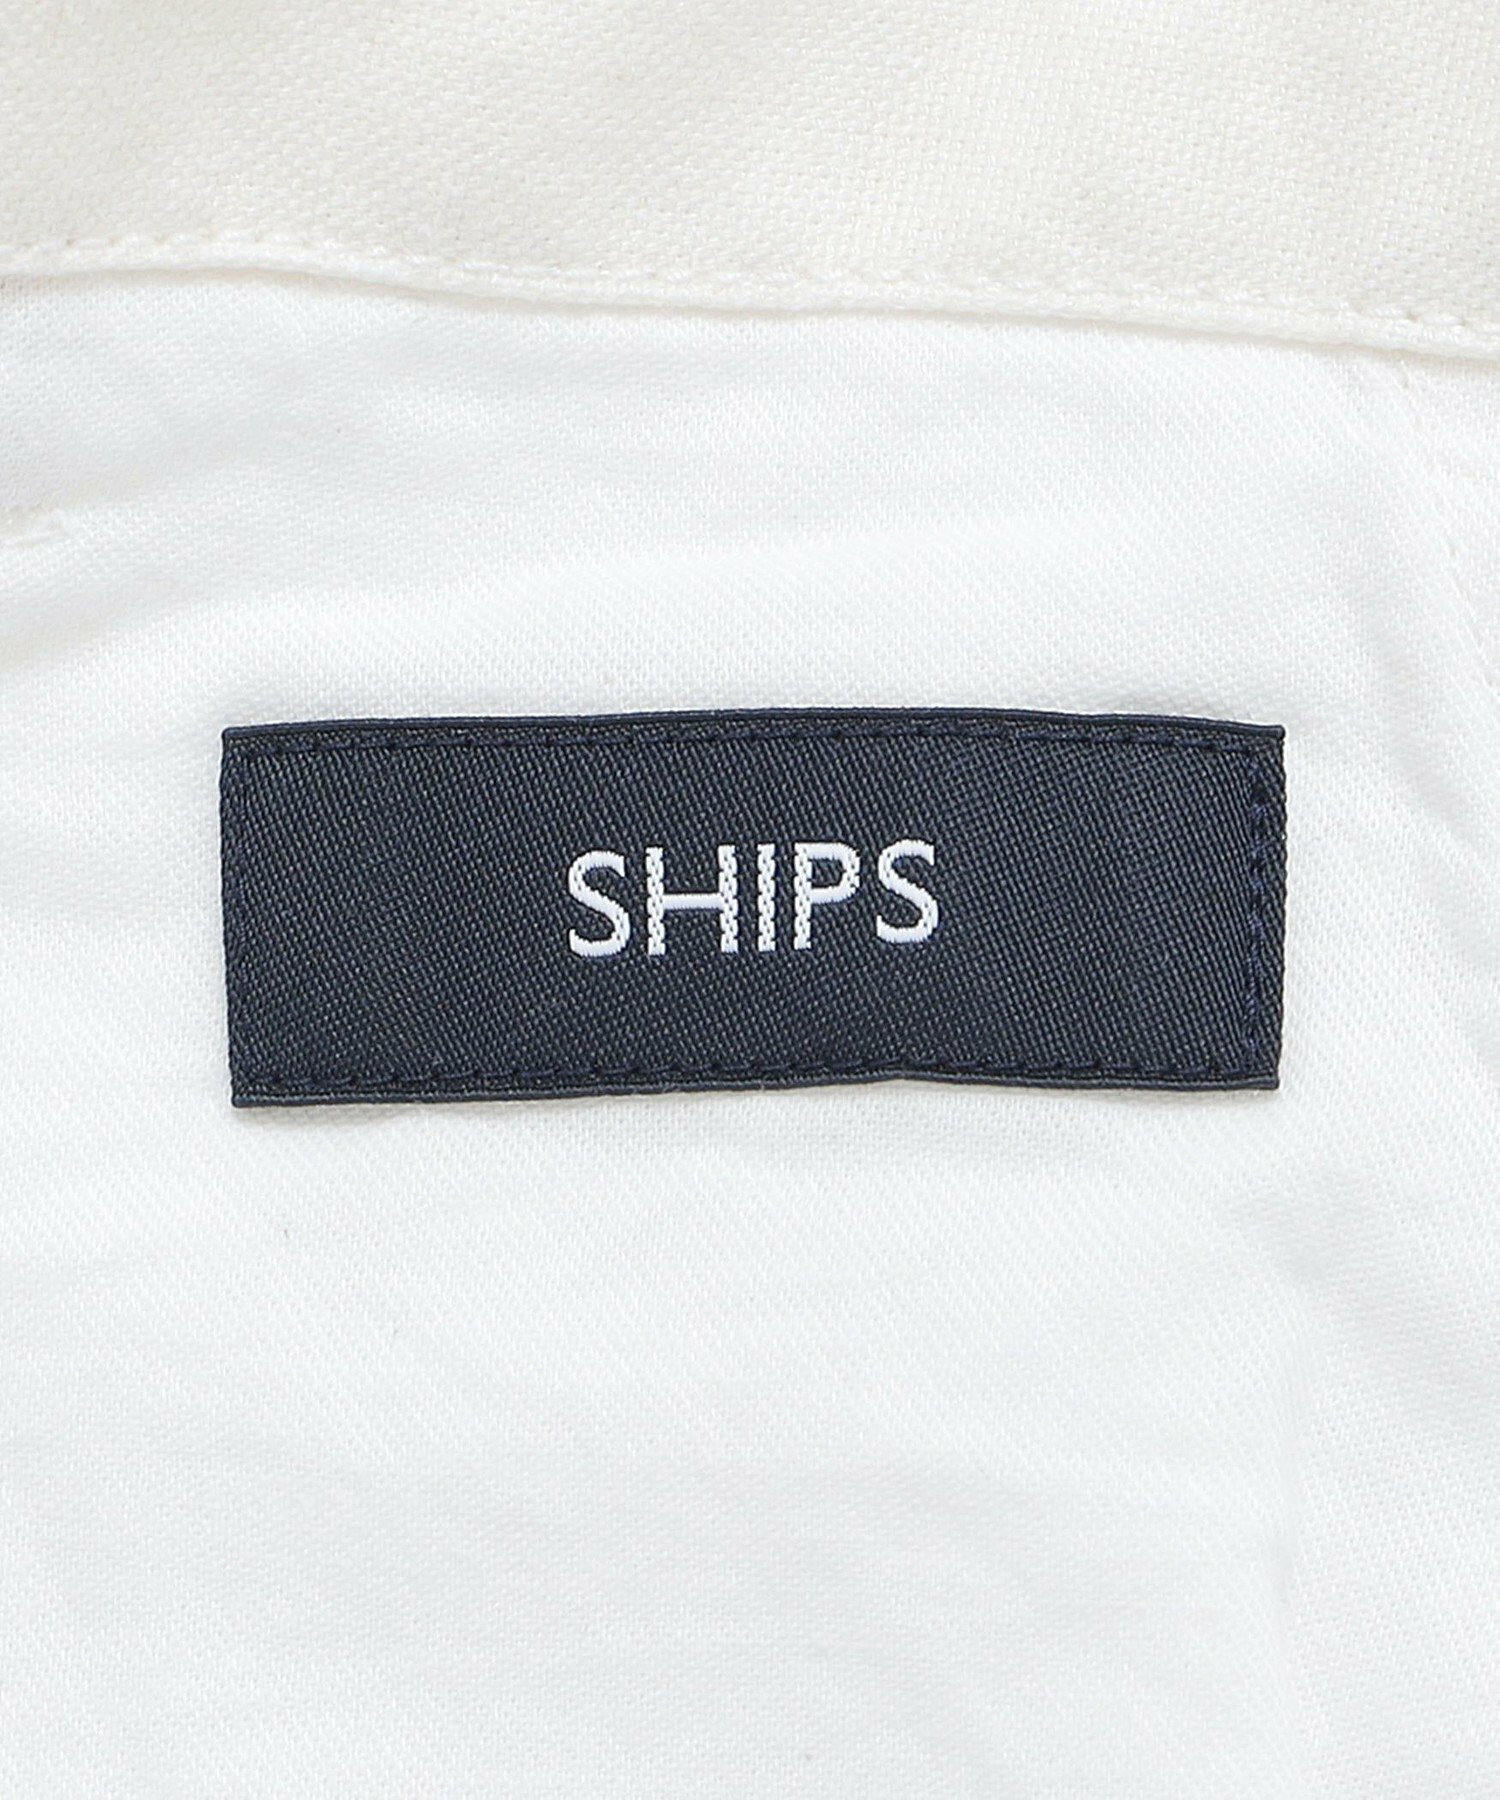 SHIPS: ラミー オックスフォード イージー ショーツ